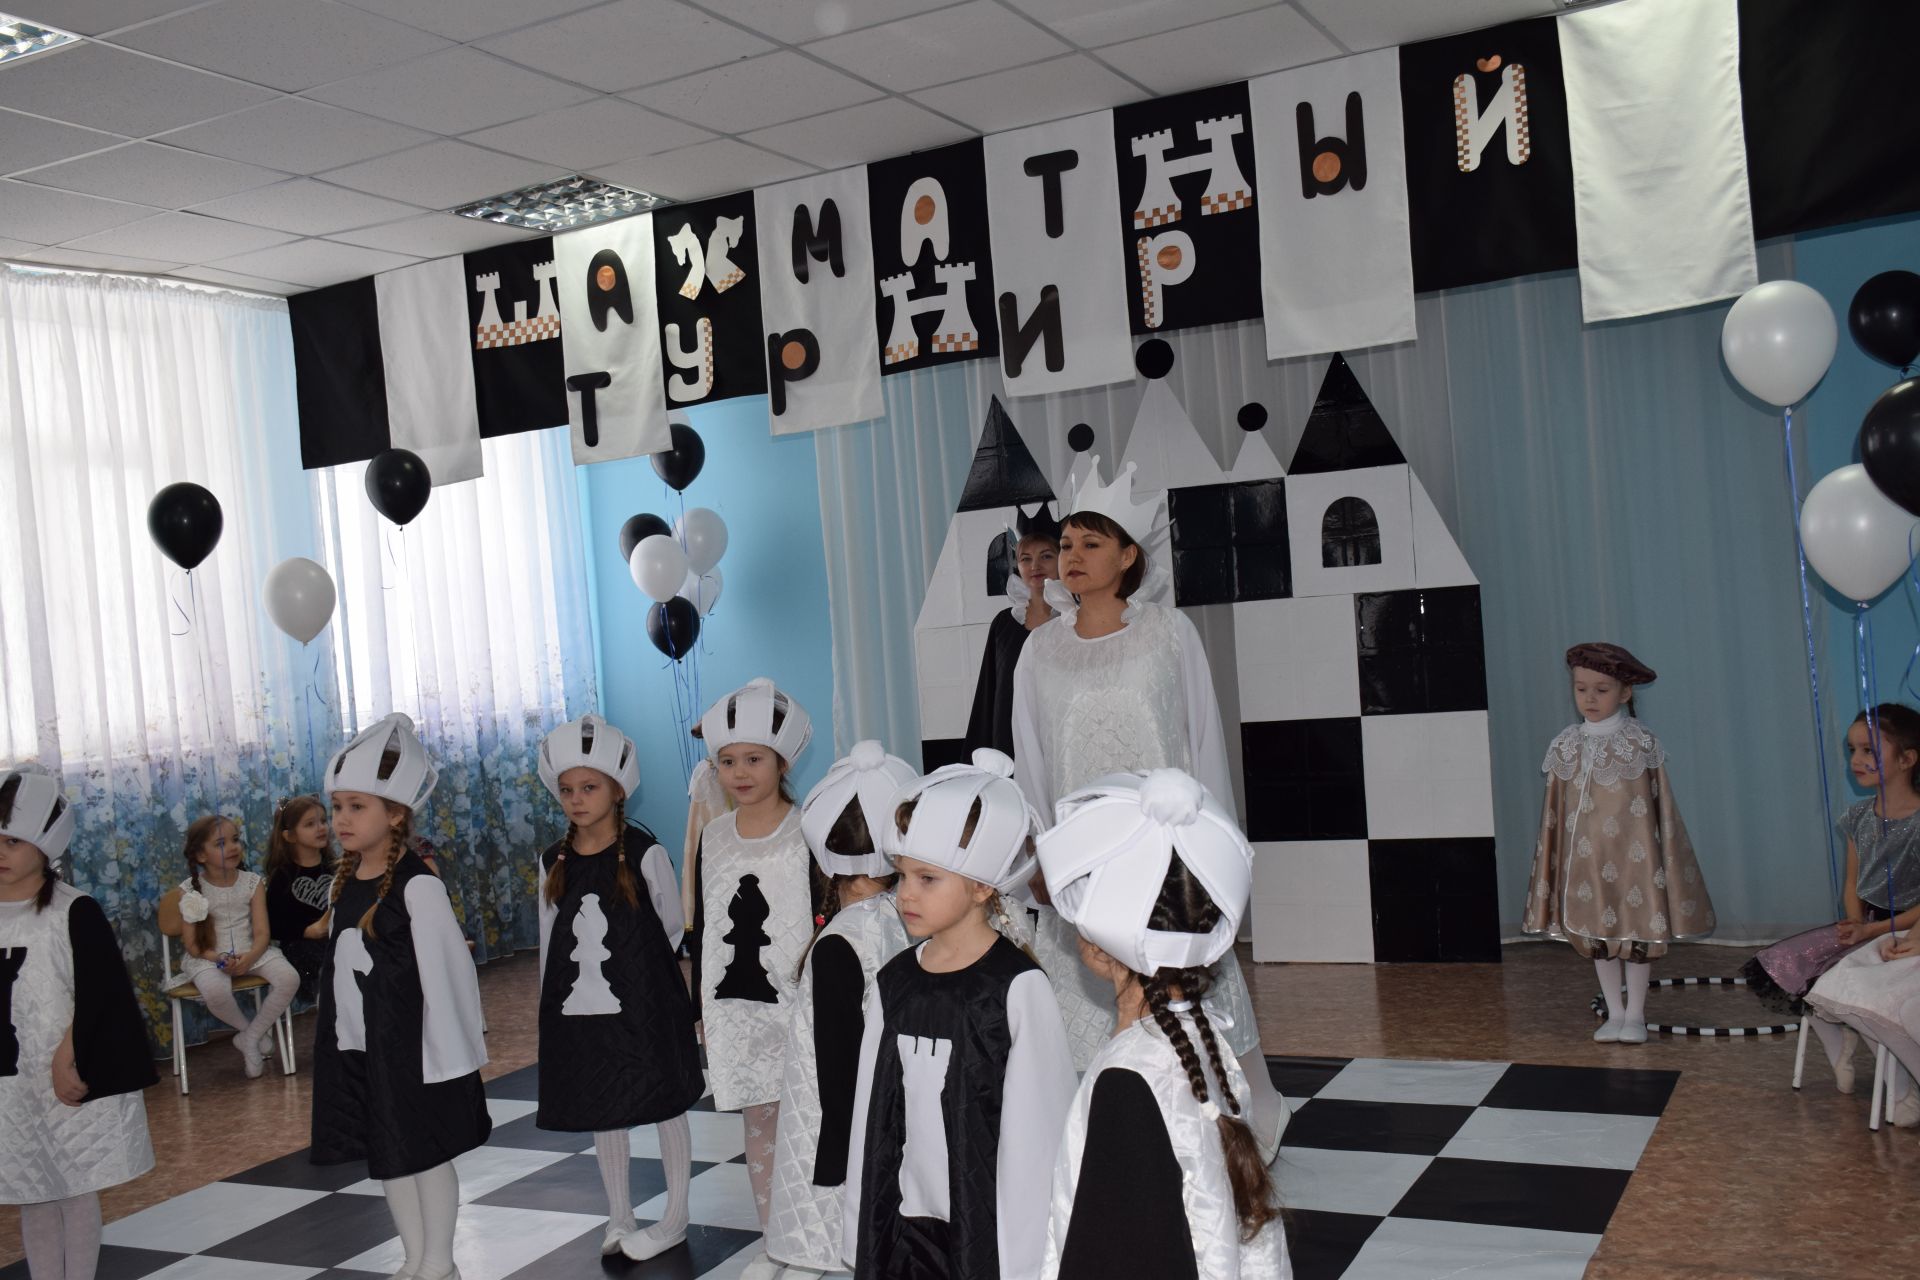 Нурлатские дошкольники играют в шахматы